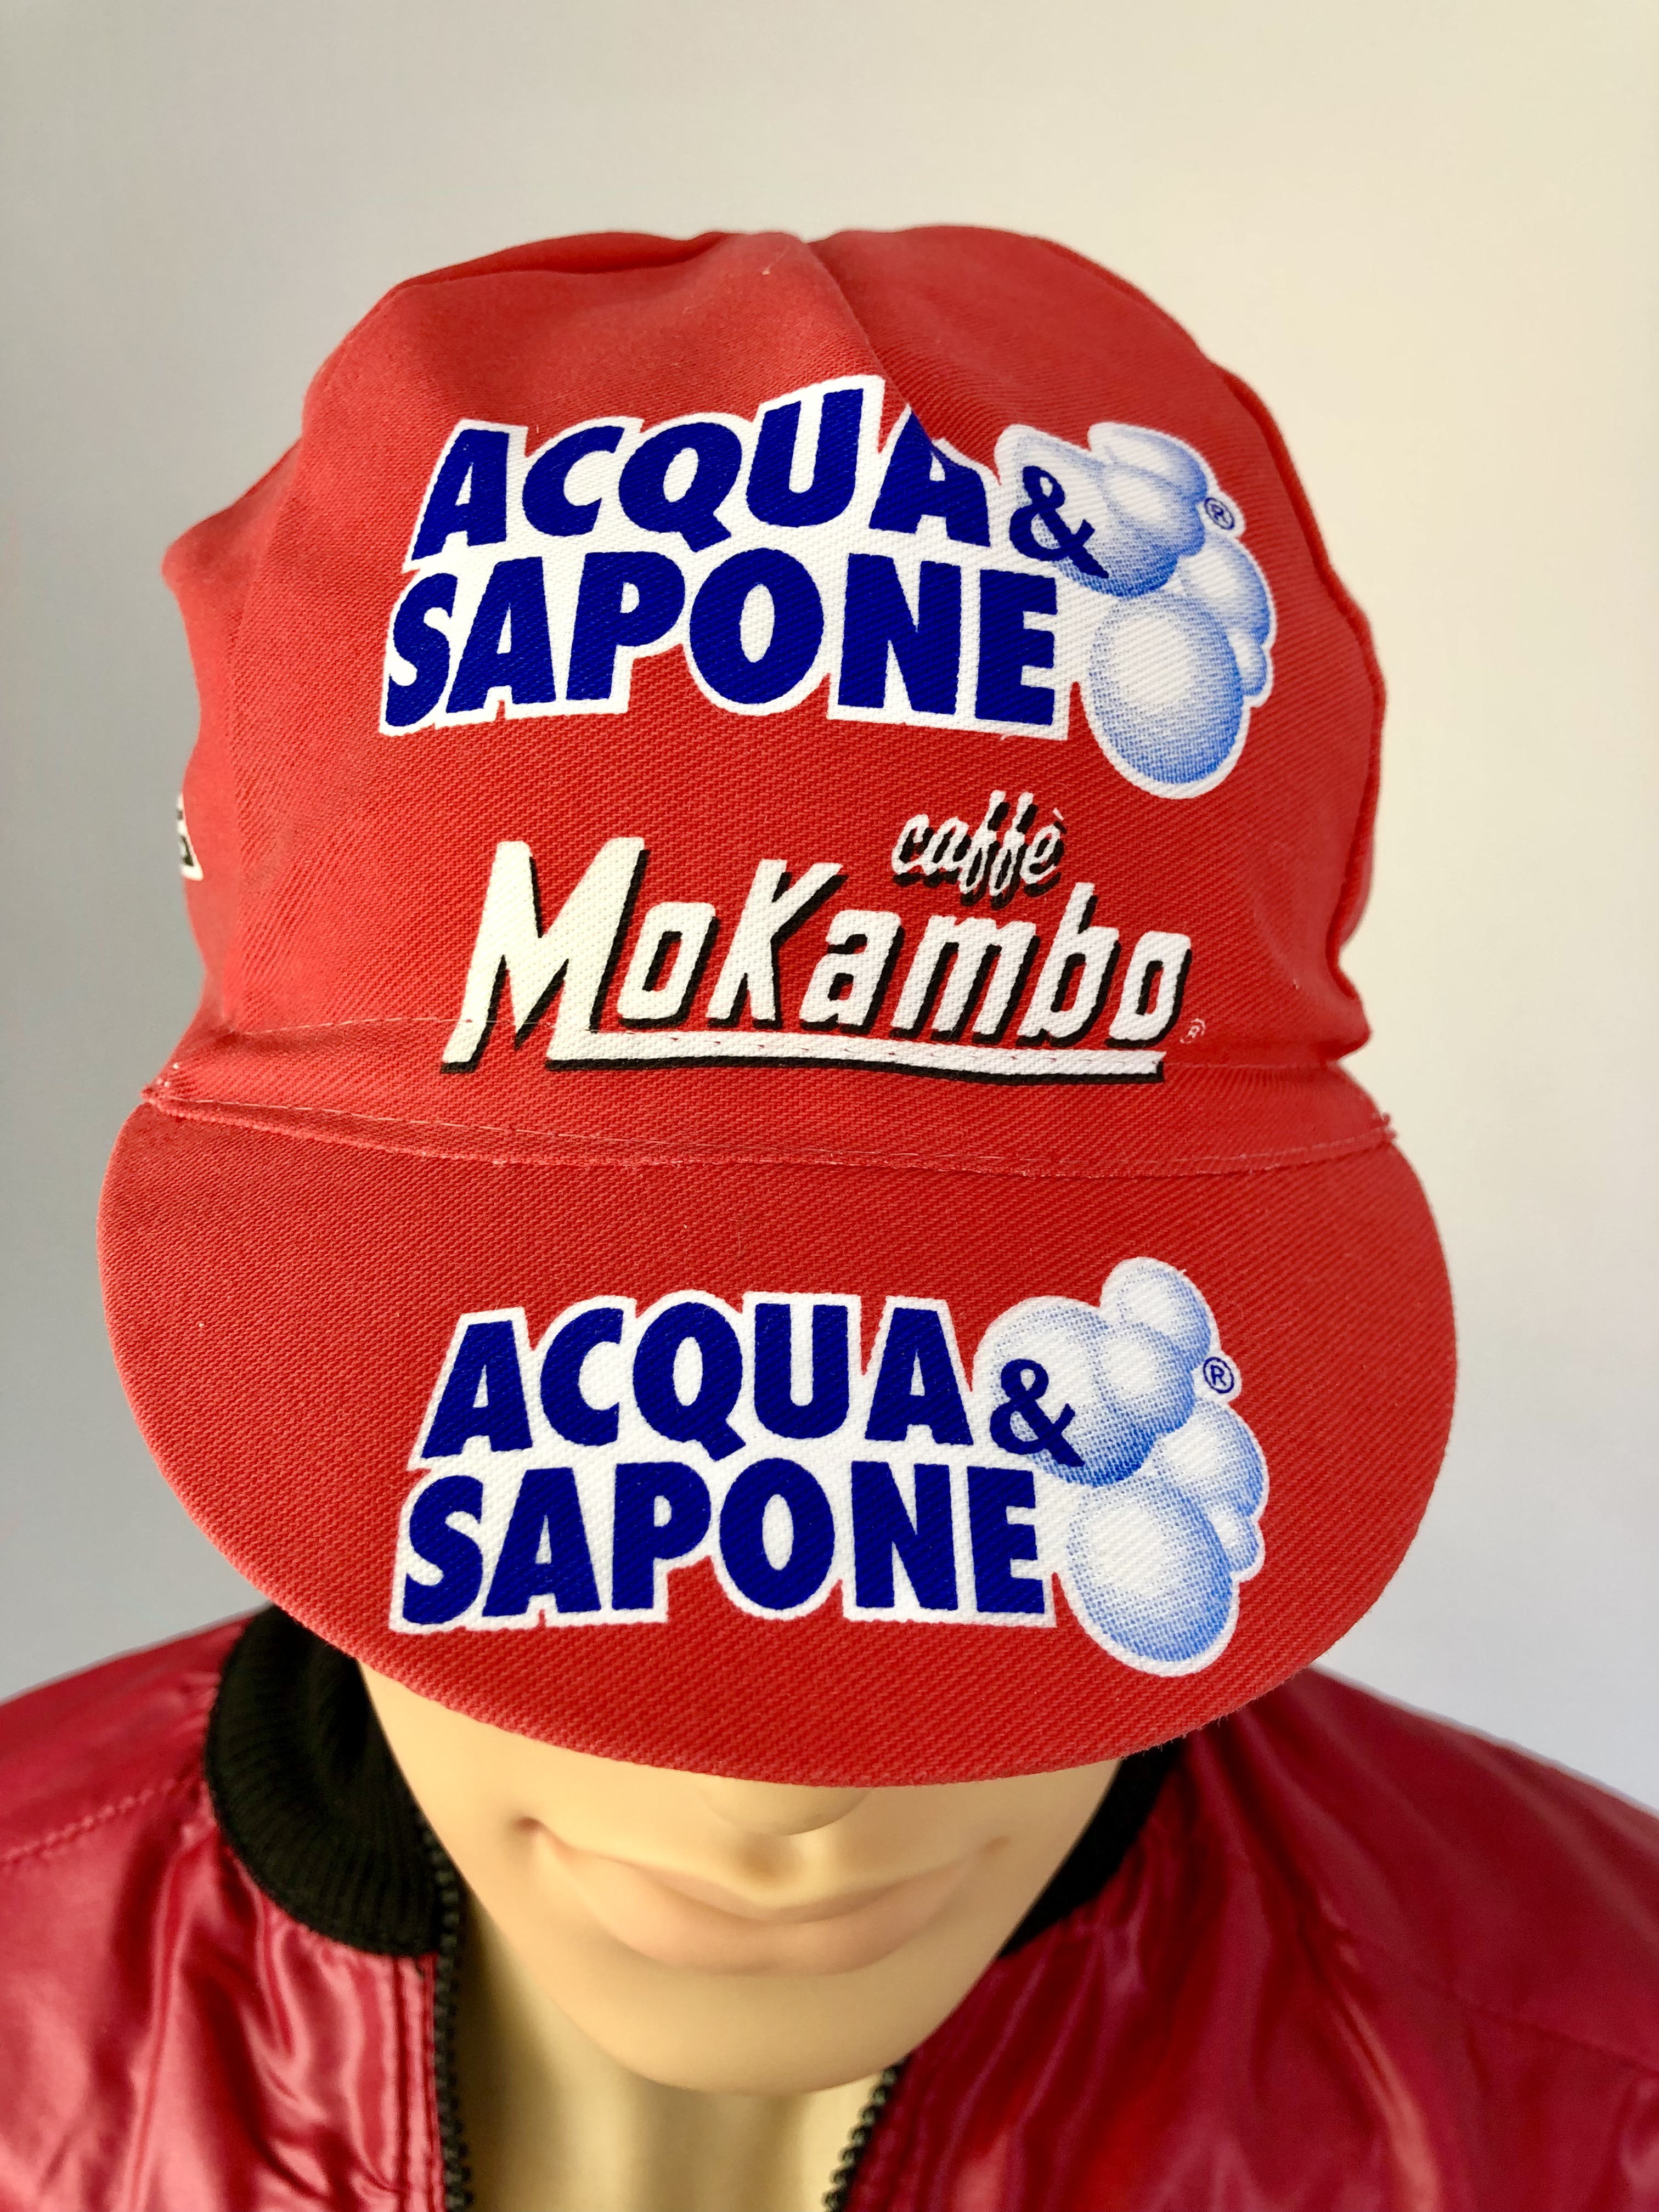 La Casquette Team Acqua & Sapone - MoKambo